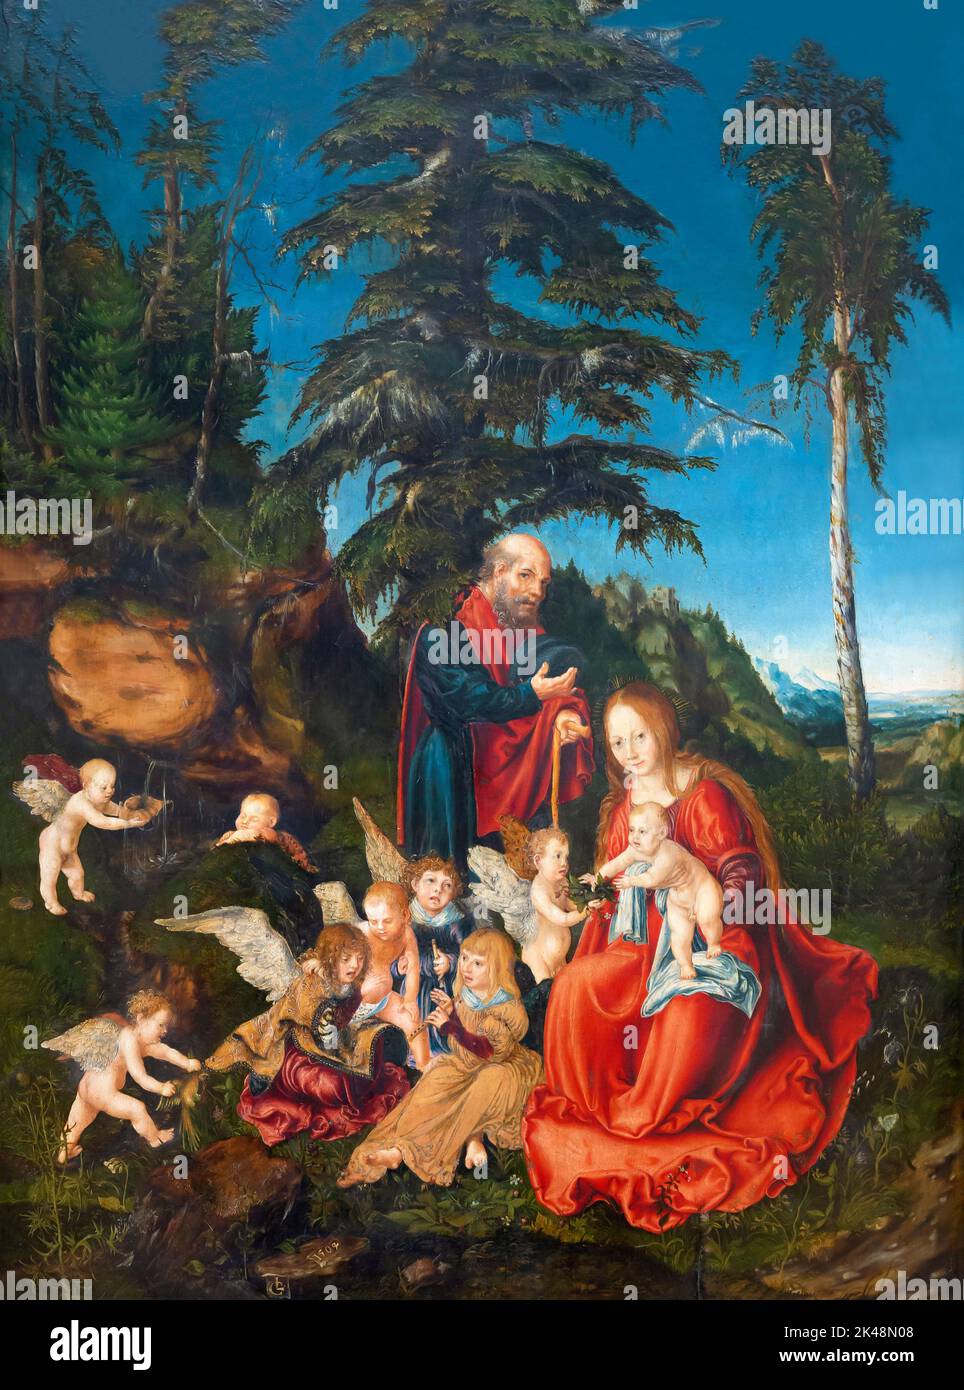 Reste du vol en Égypte, Lucas Cranach The Elder, 1504, Gemaldegalerie, Berlin, Allemagne, Europe Banque D'Images